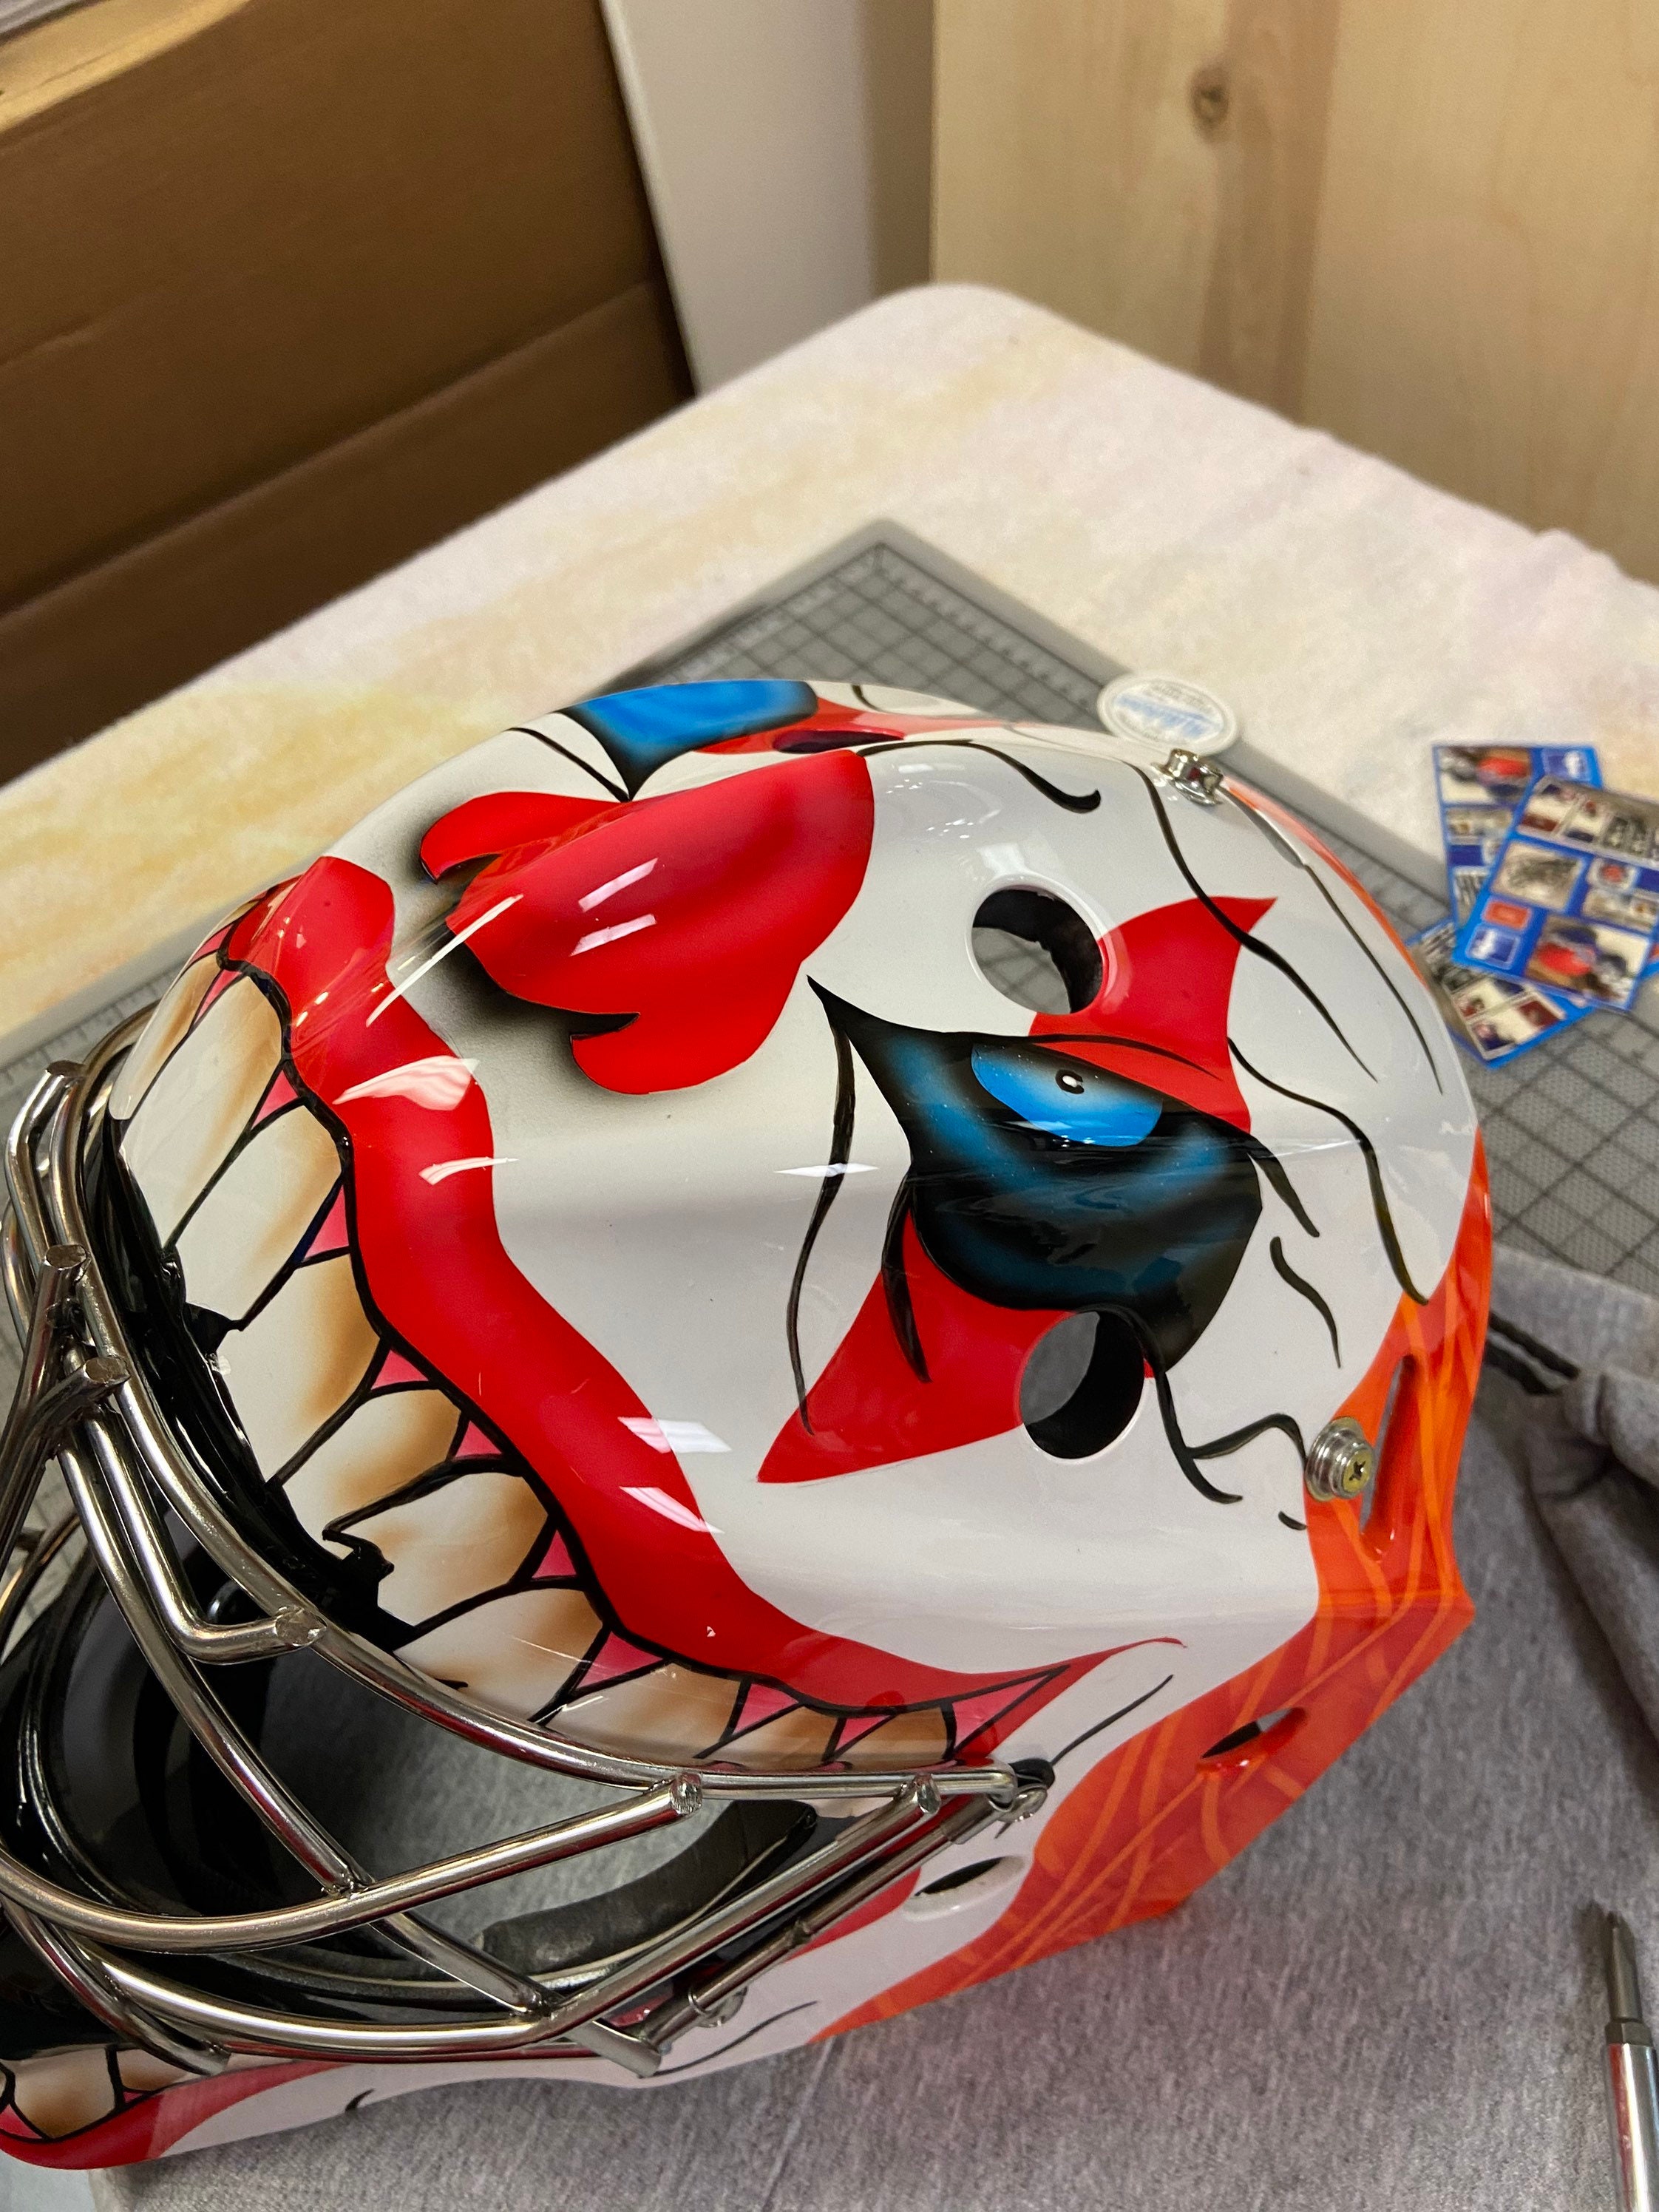 Custom Painted Goalie Masks 